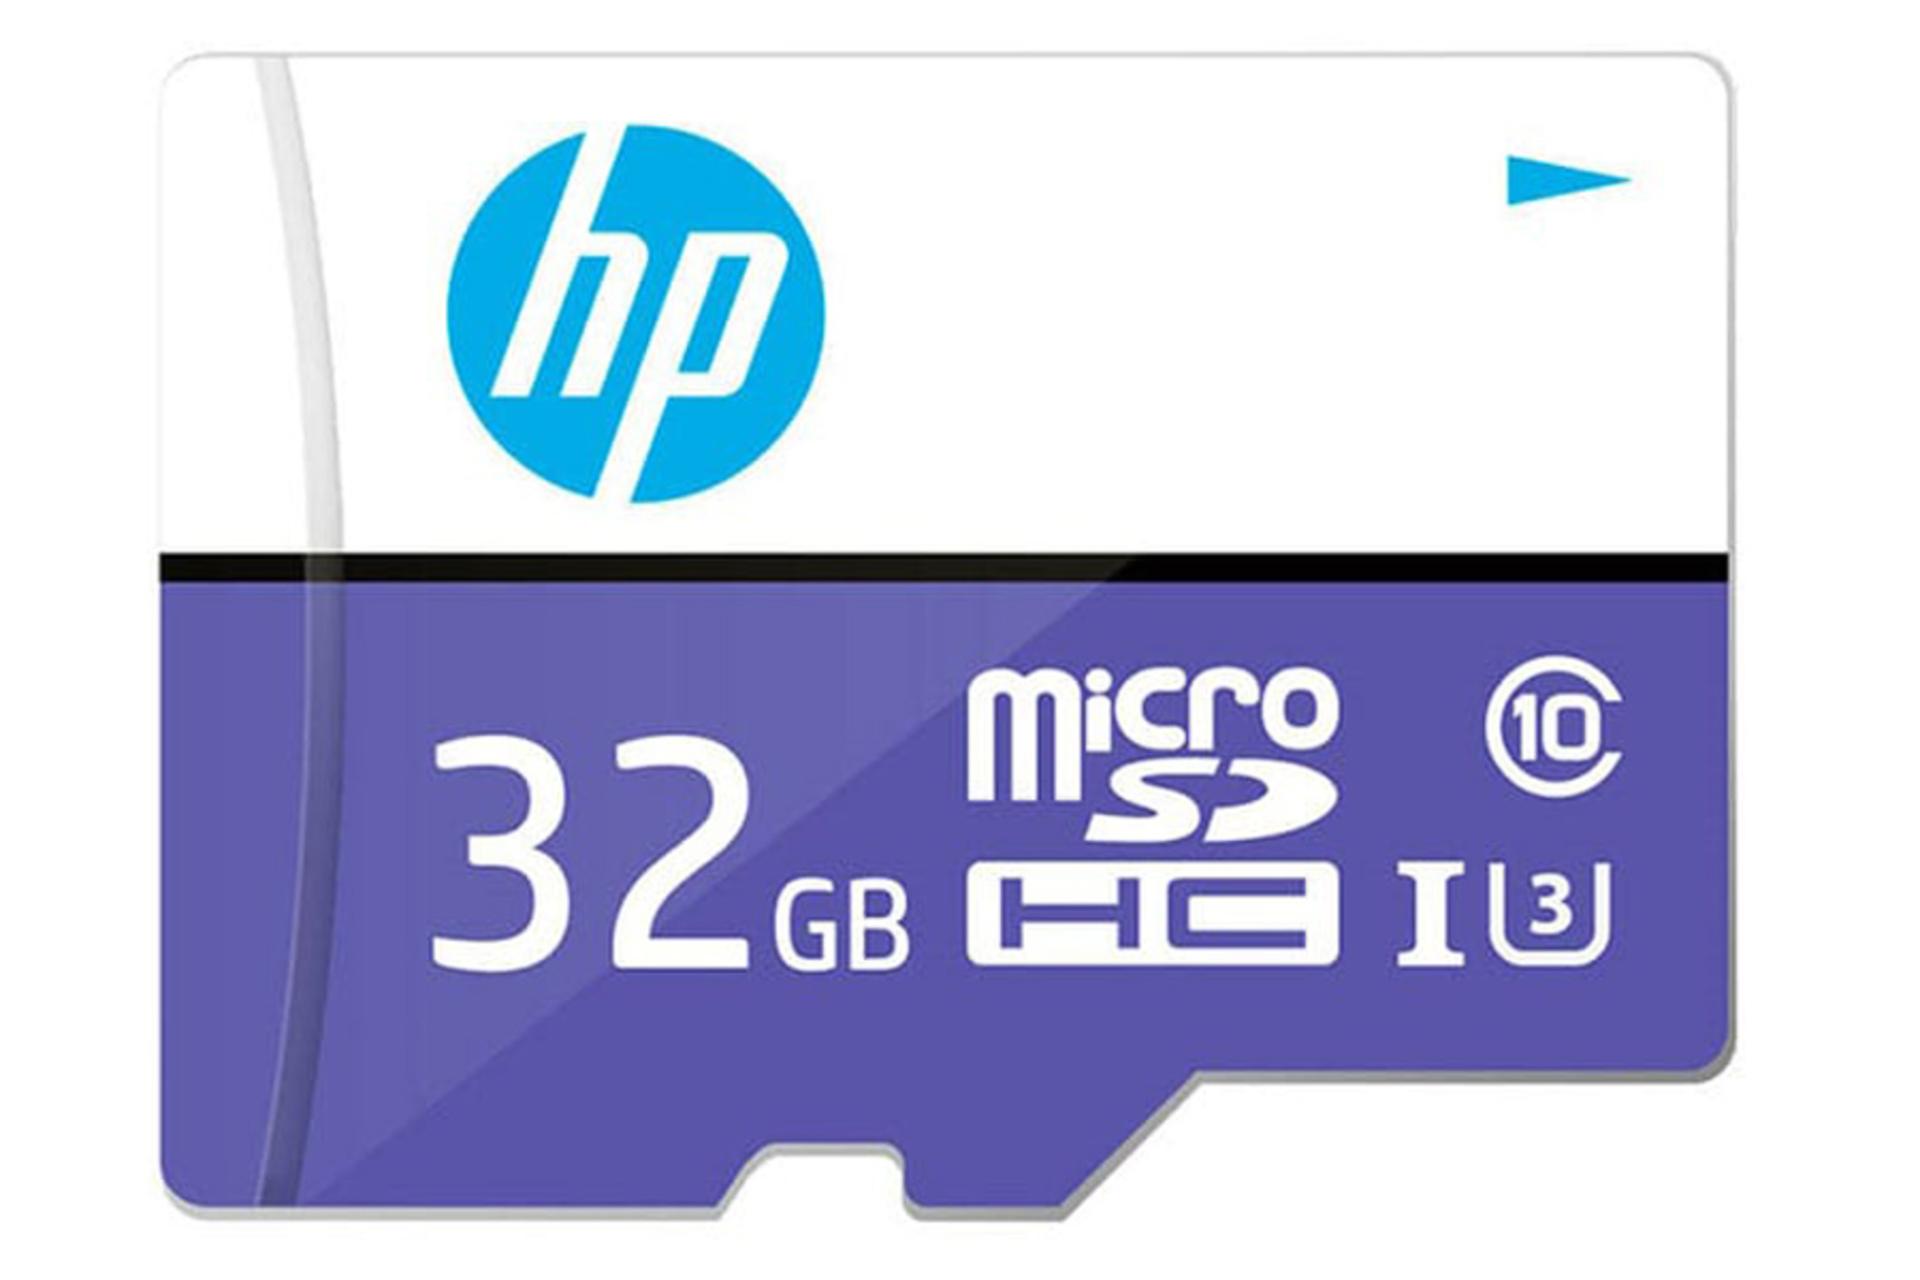 نمای روبرو کارت حافظه اچ پی microSDHC با ظرفیت 32 گیگابایت مدل MX230 کلاس 10